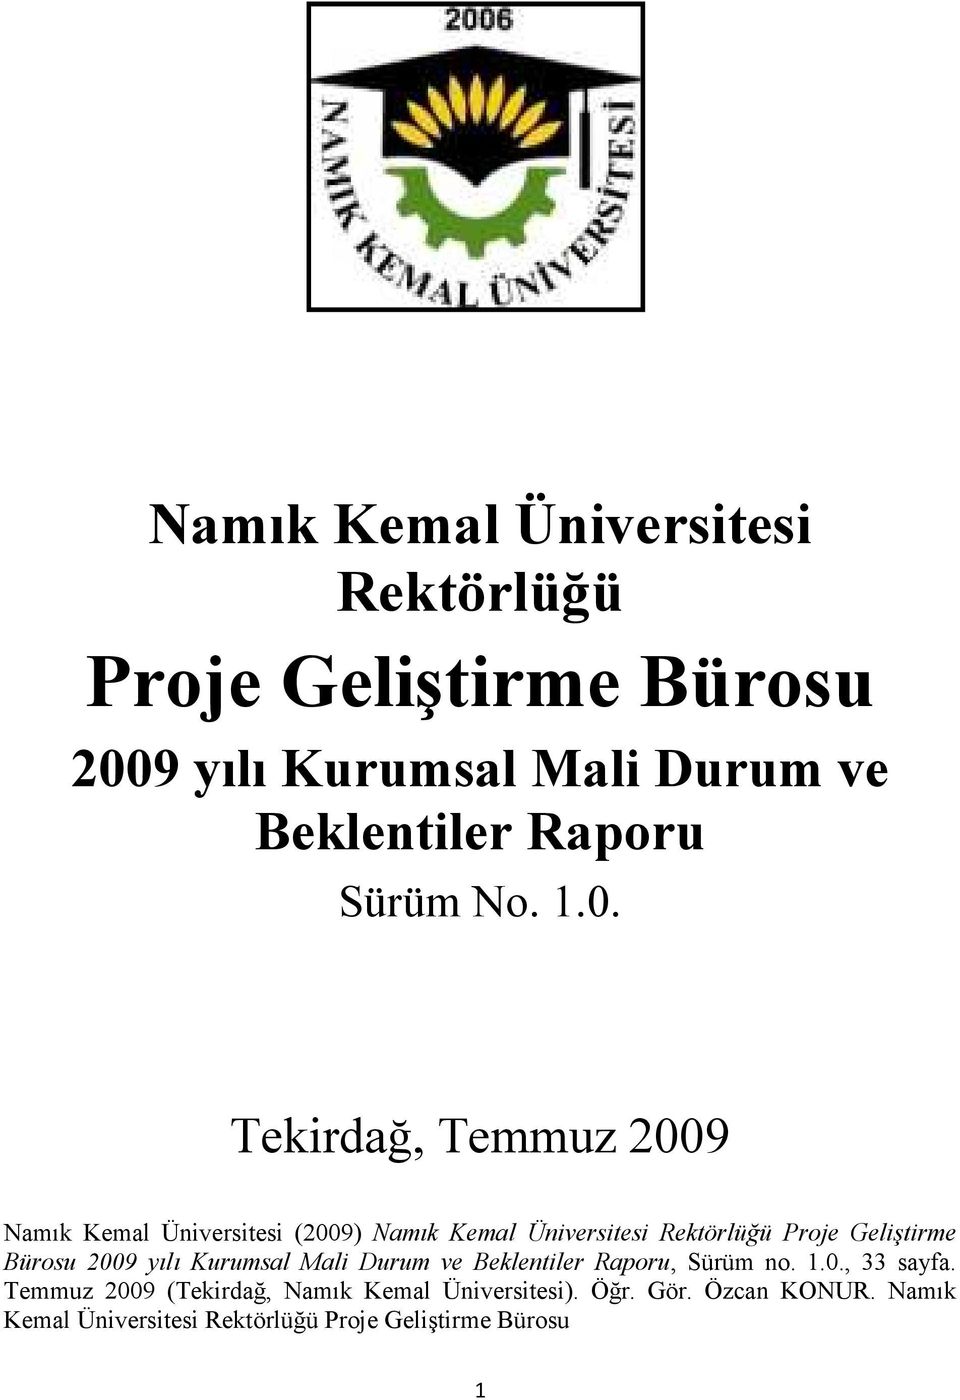 Temmuz 2009 (Tekirdağ, Namık Kemal Üniversitesi). Öğr. Gör. Özcan KONUR.